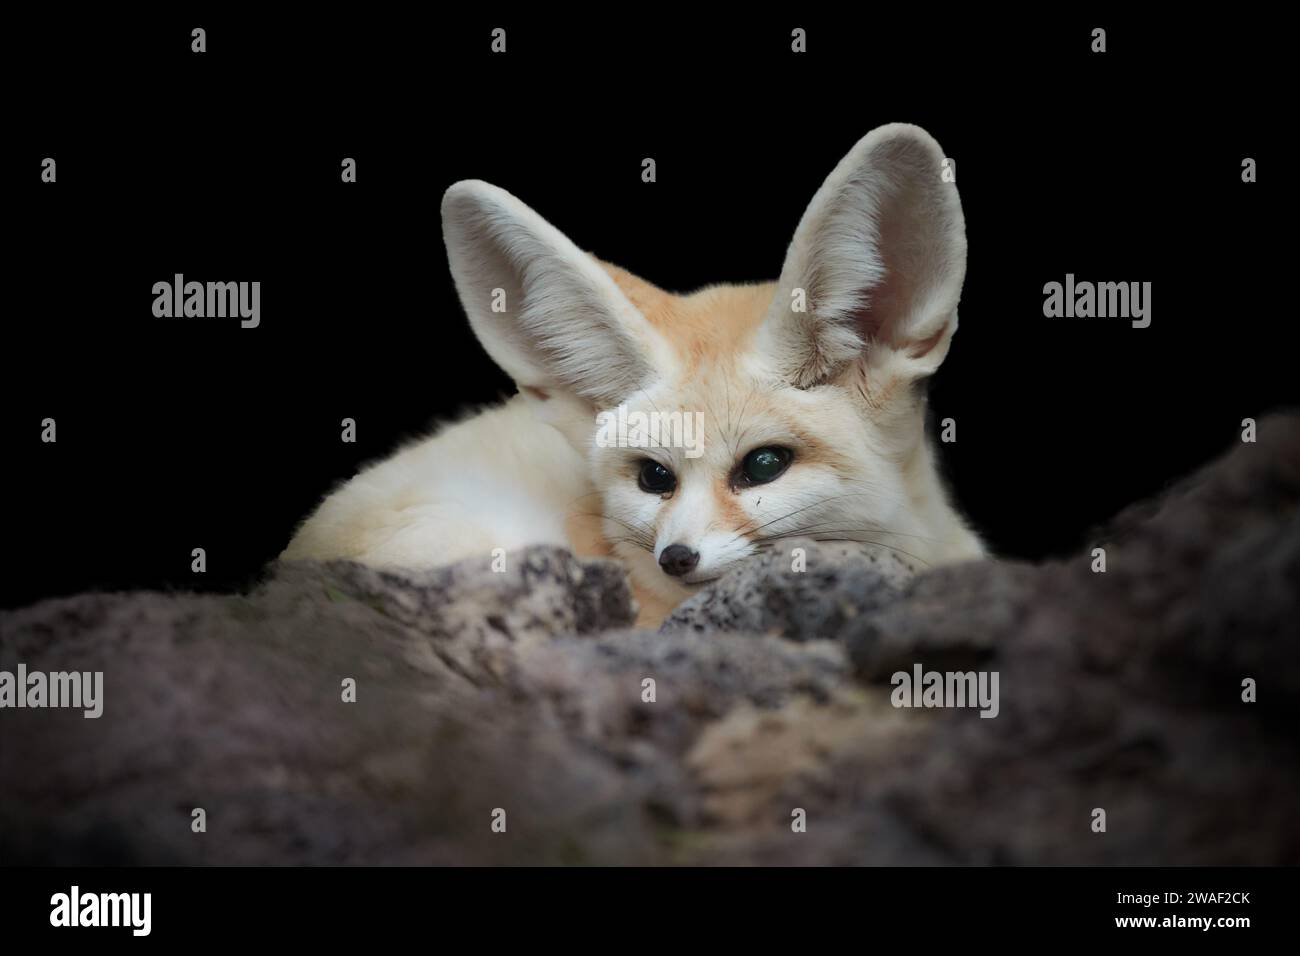 Isoliert auf schwarzem Hintergrund: Fennec-Fuchs, Vulpes Zerda, der kleinste Fuchs, der in den Wüsten Nordafrikas beheimatet ist. Direkter Augenkontakt, große Ohren, Stein Stockfoto